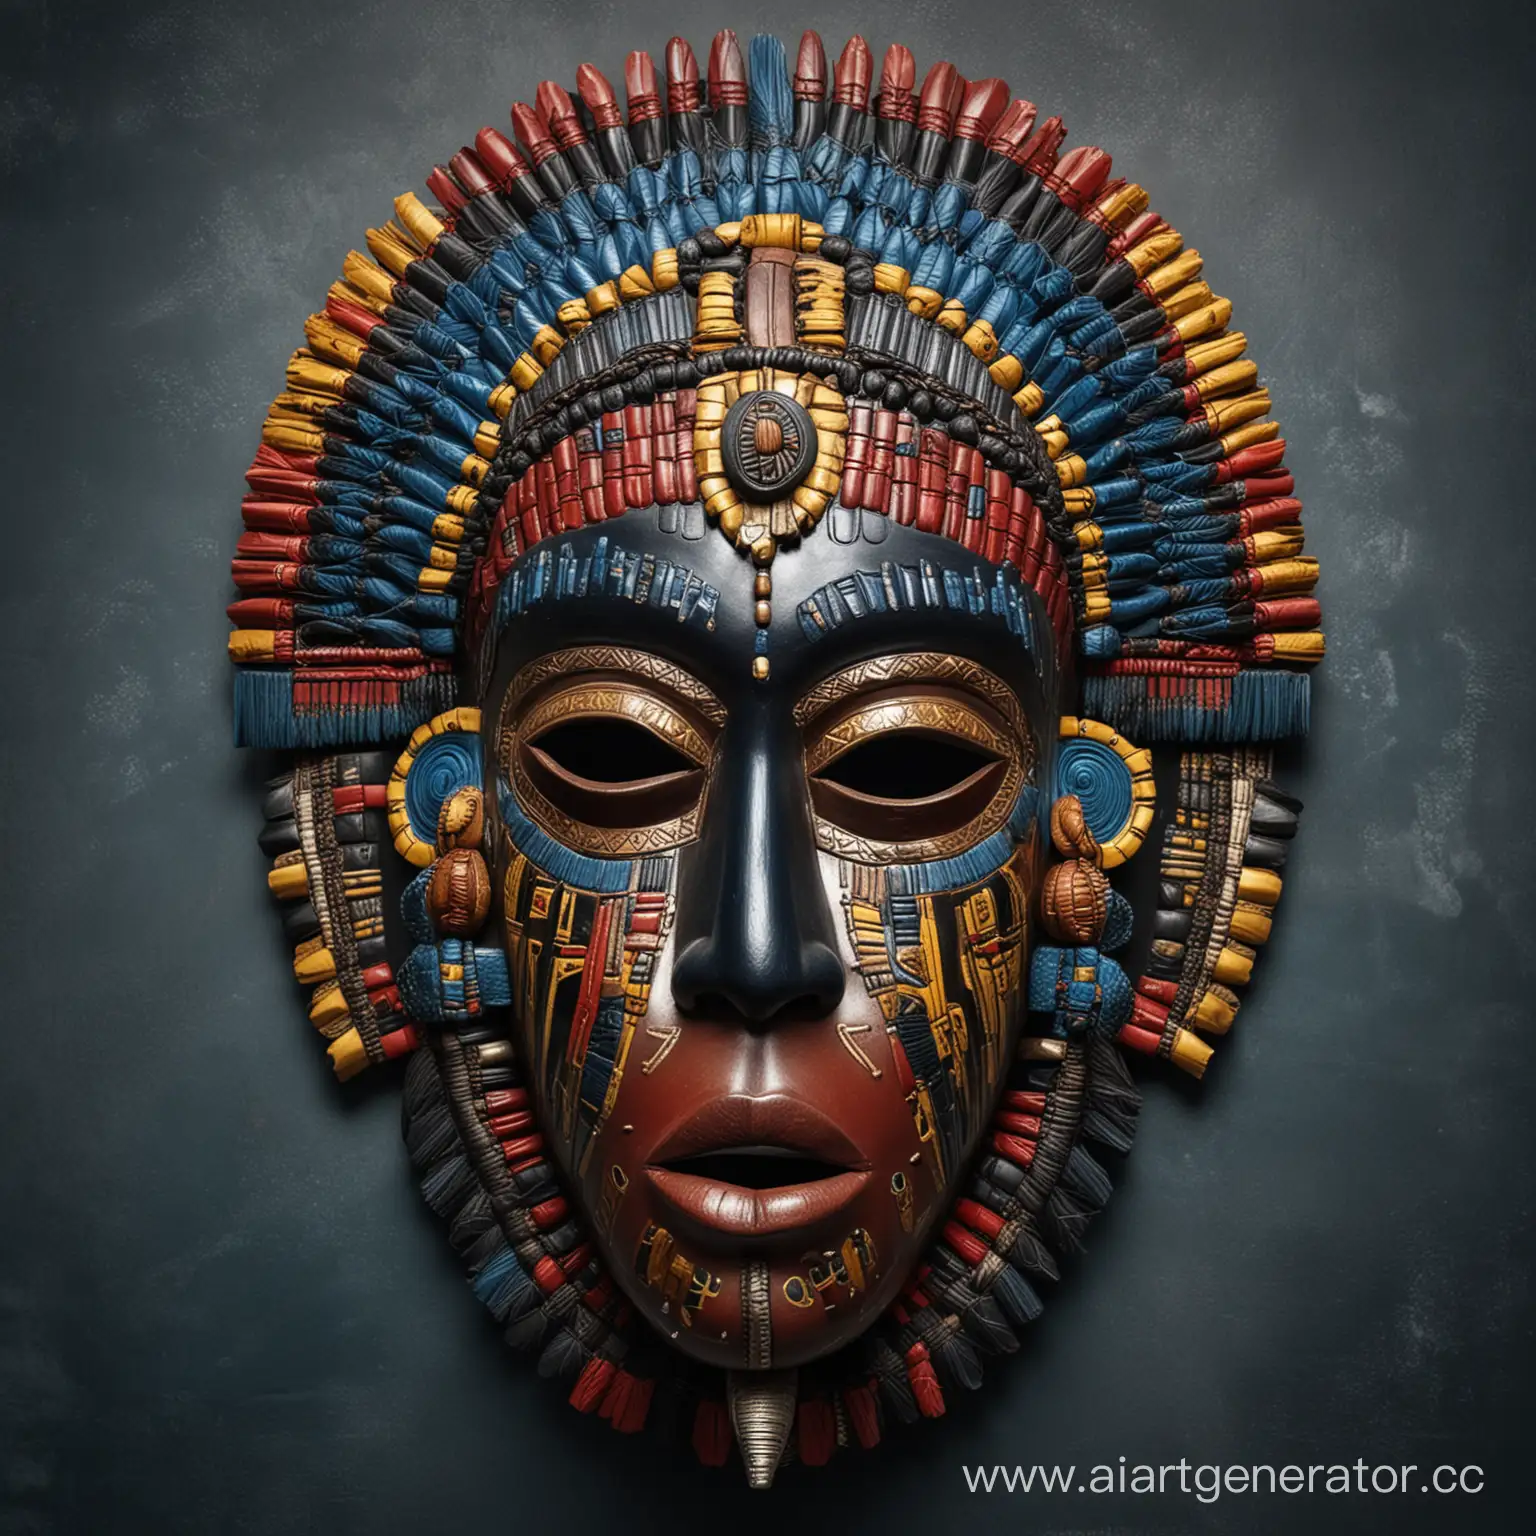 интерьерная декоративная маска африканских племён ,этническая, сложно выполненная, со множеством деталей и фактур,  в синем , черном, красном, желтом цвете.